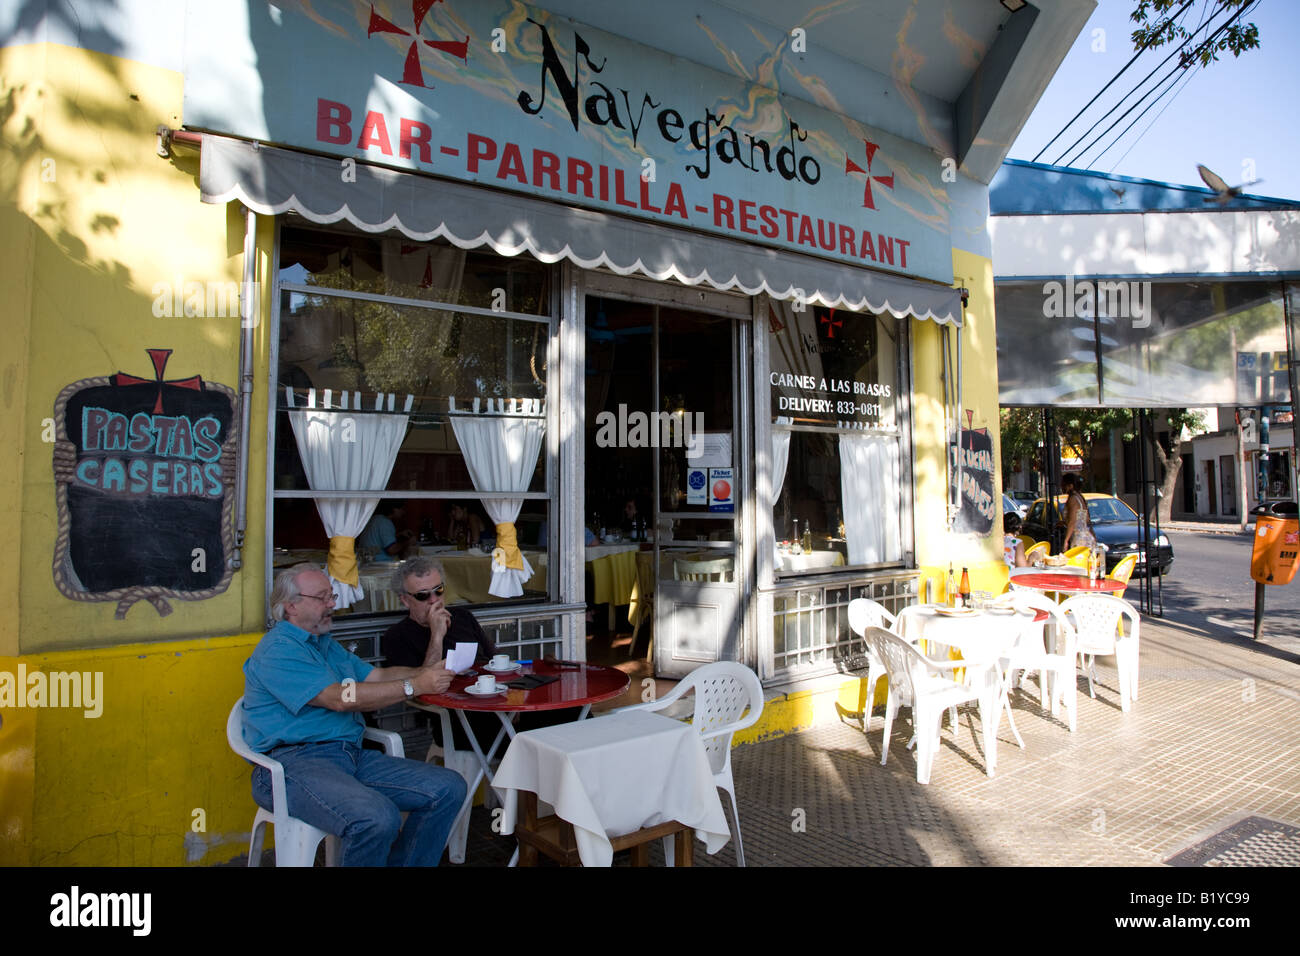 Navegando Bar Cafe, Palermo Soho, Buenos Aires Stock Photo